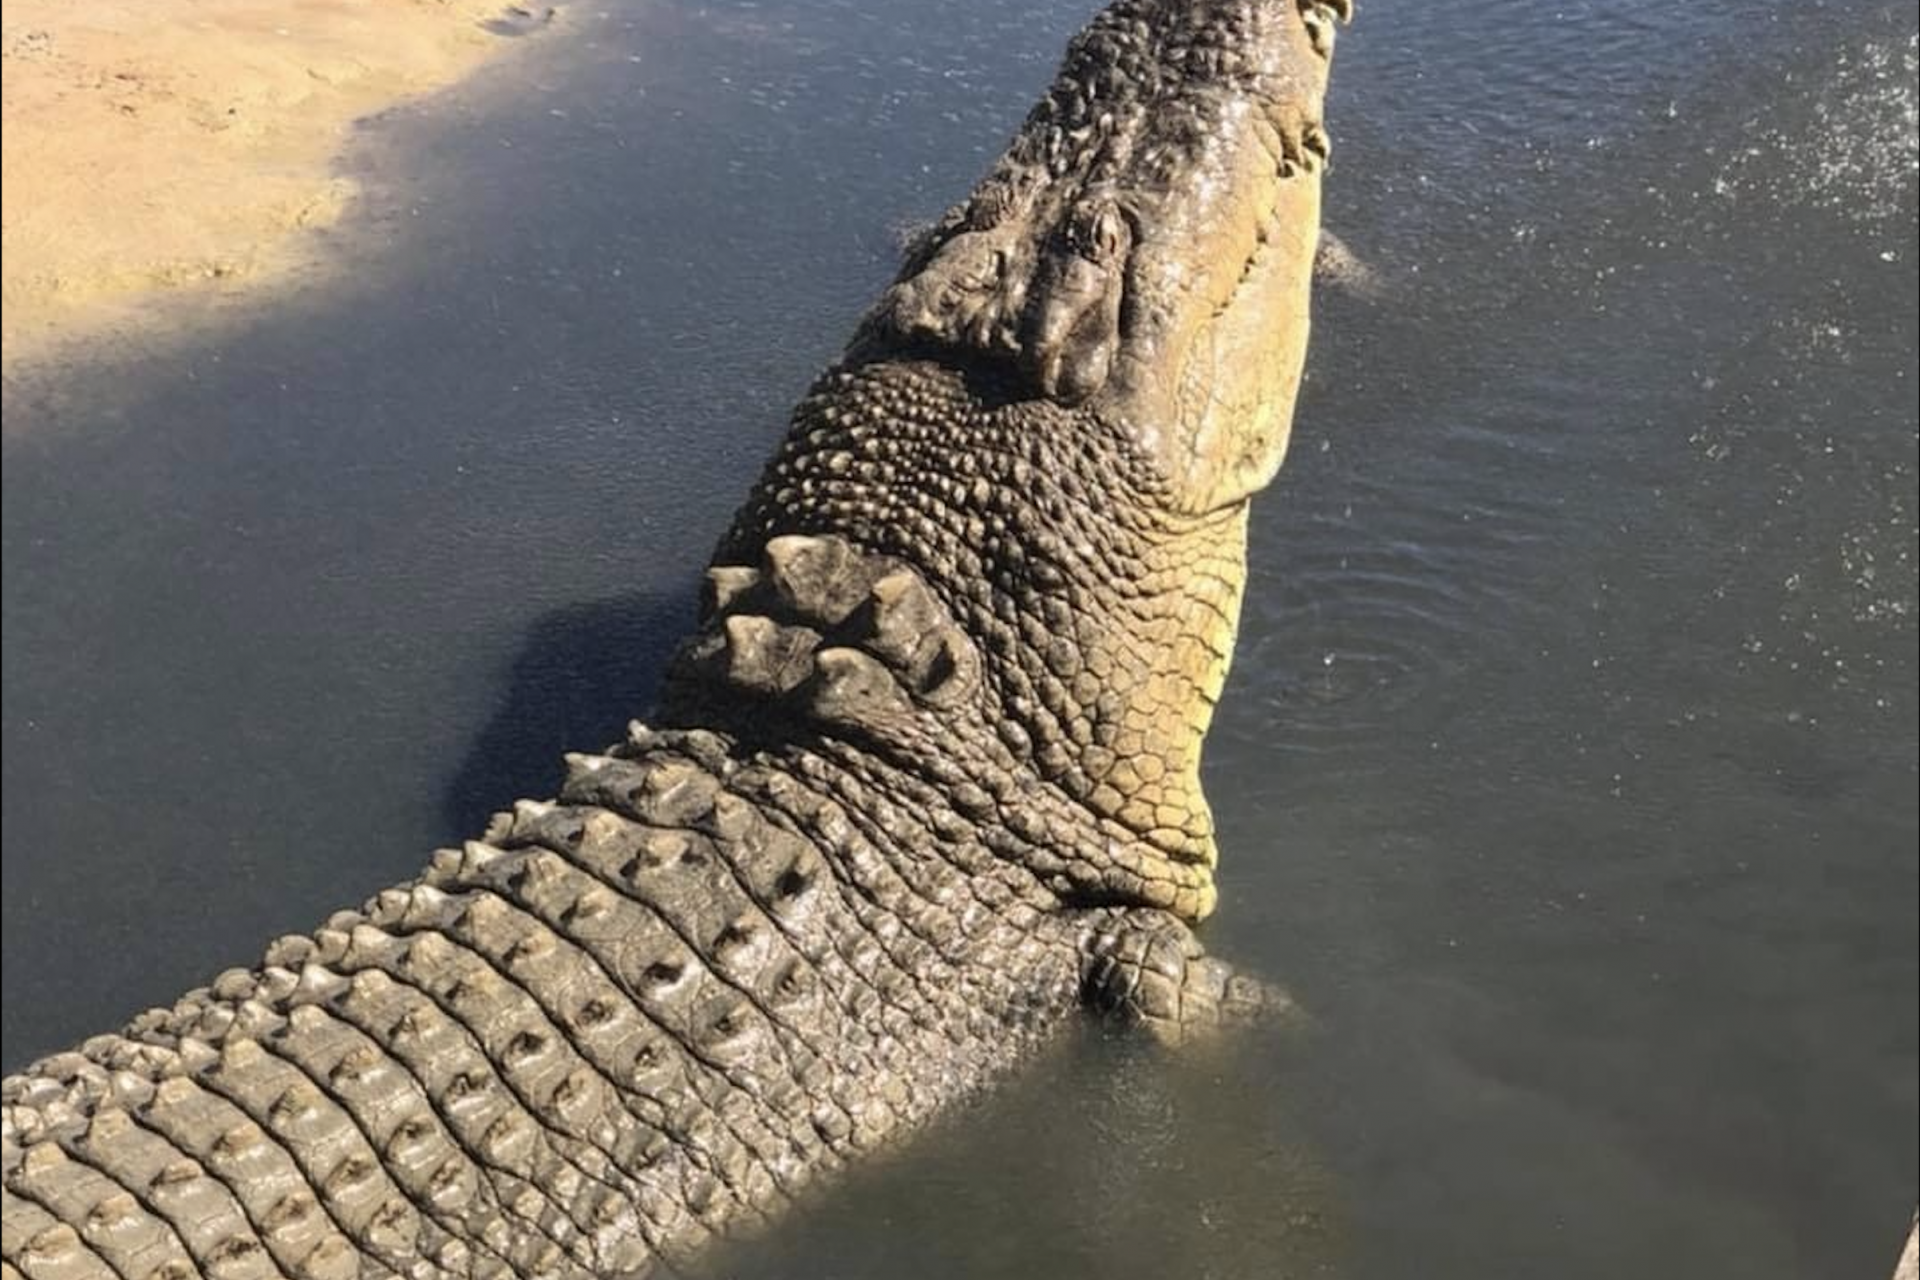 What happened at Koorana Crocodile Farm?